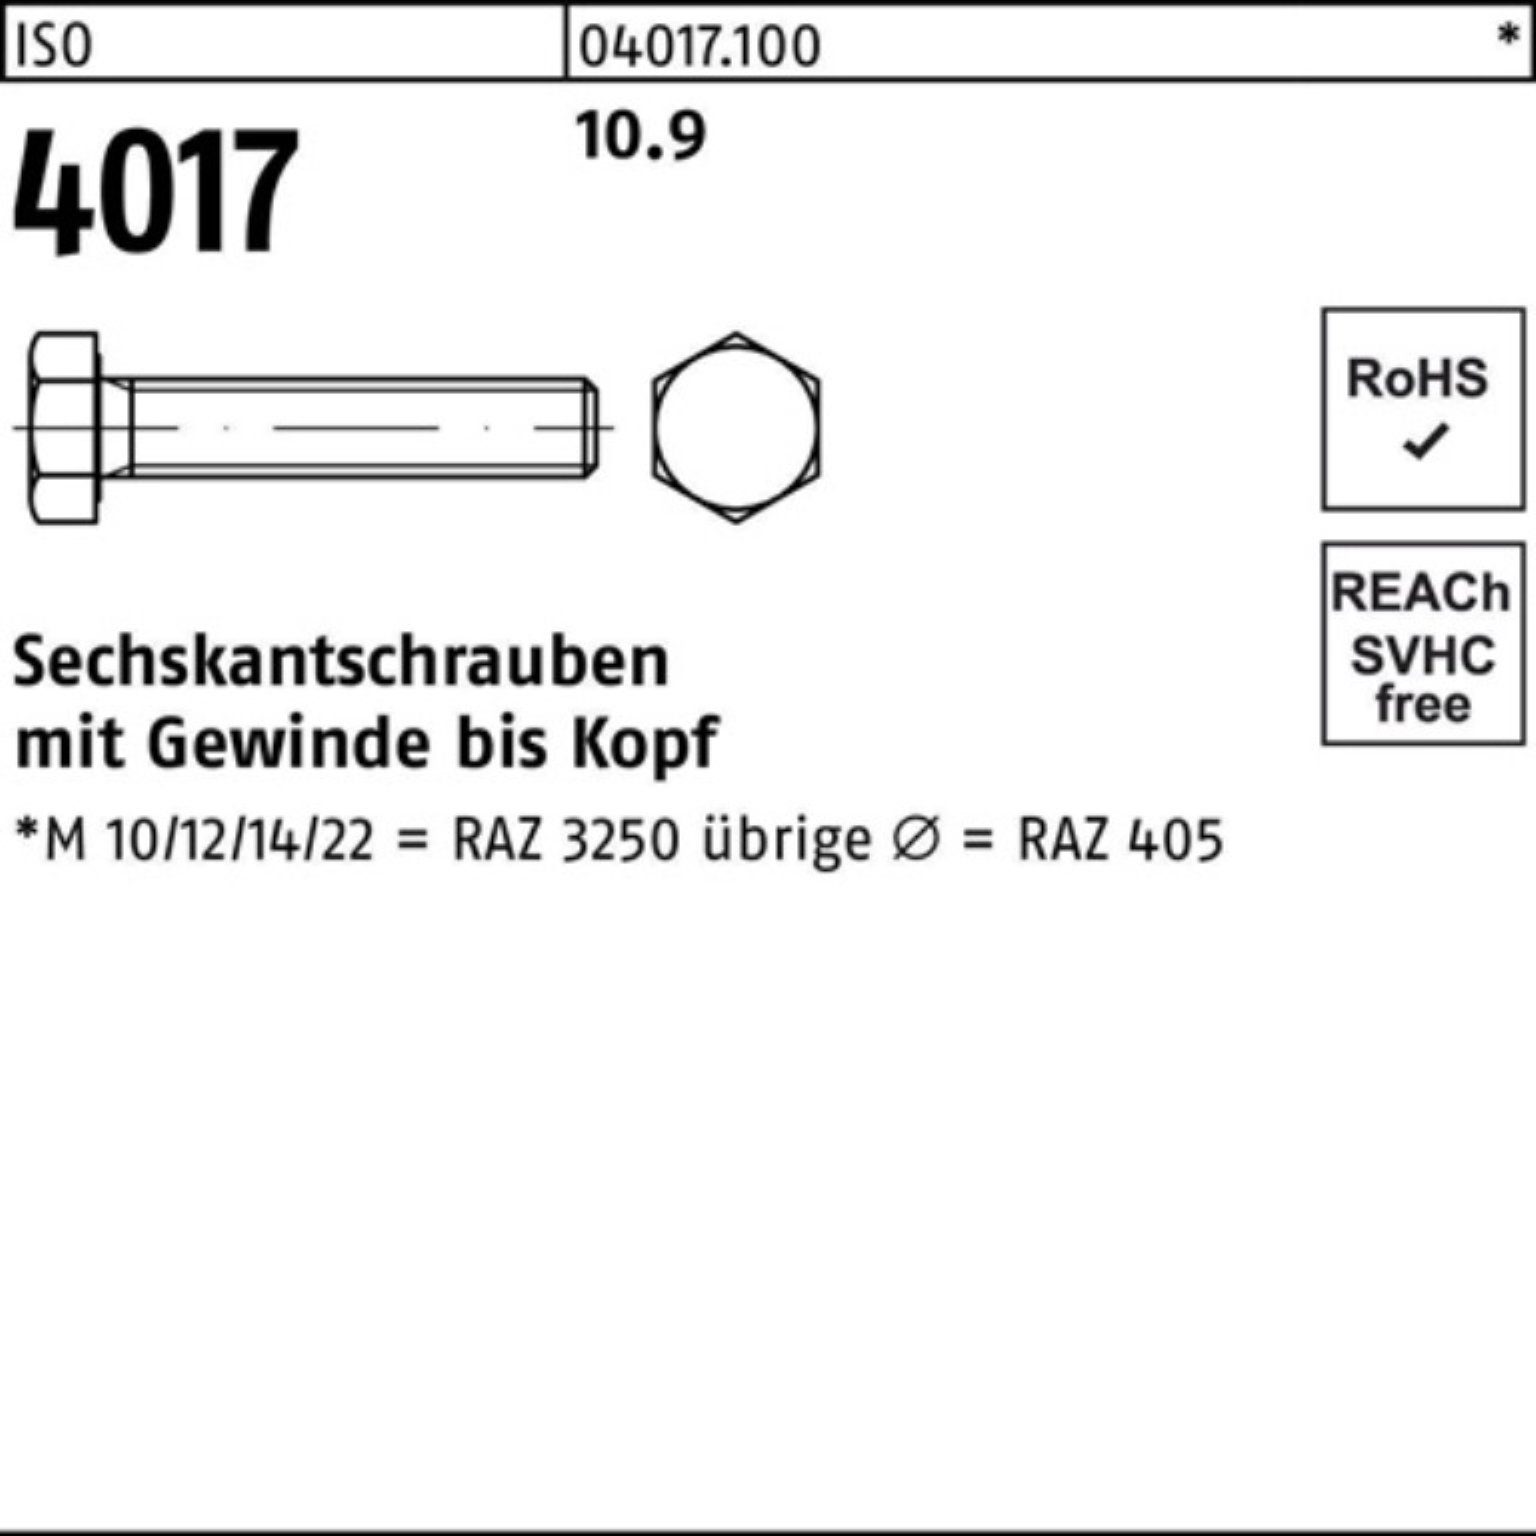 Bufab Sechskantschraube M8x 10.9 200er ISO 200 Pack 4017 40 Sechskantschraube Stück VG 25 ISO